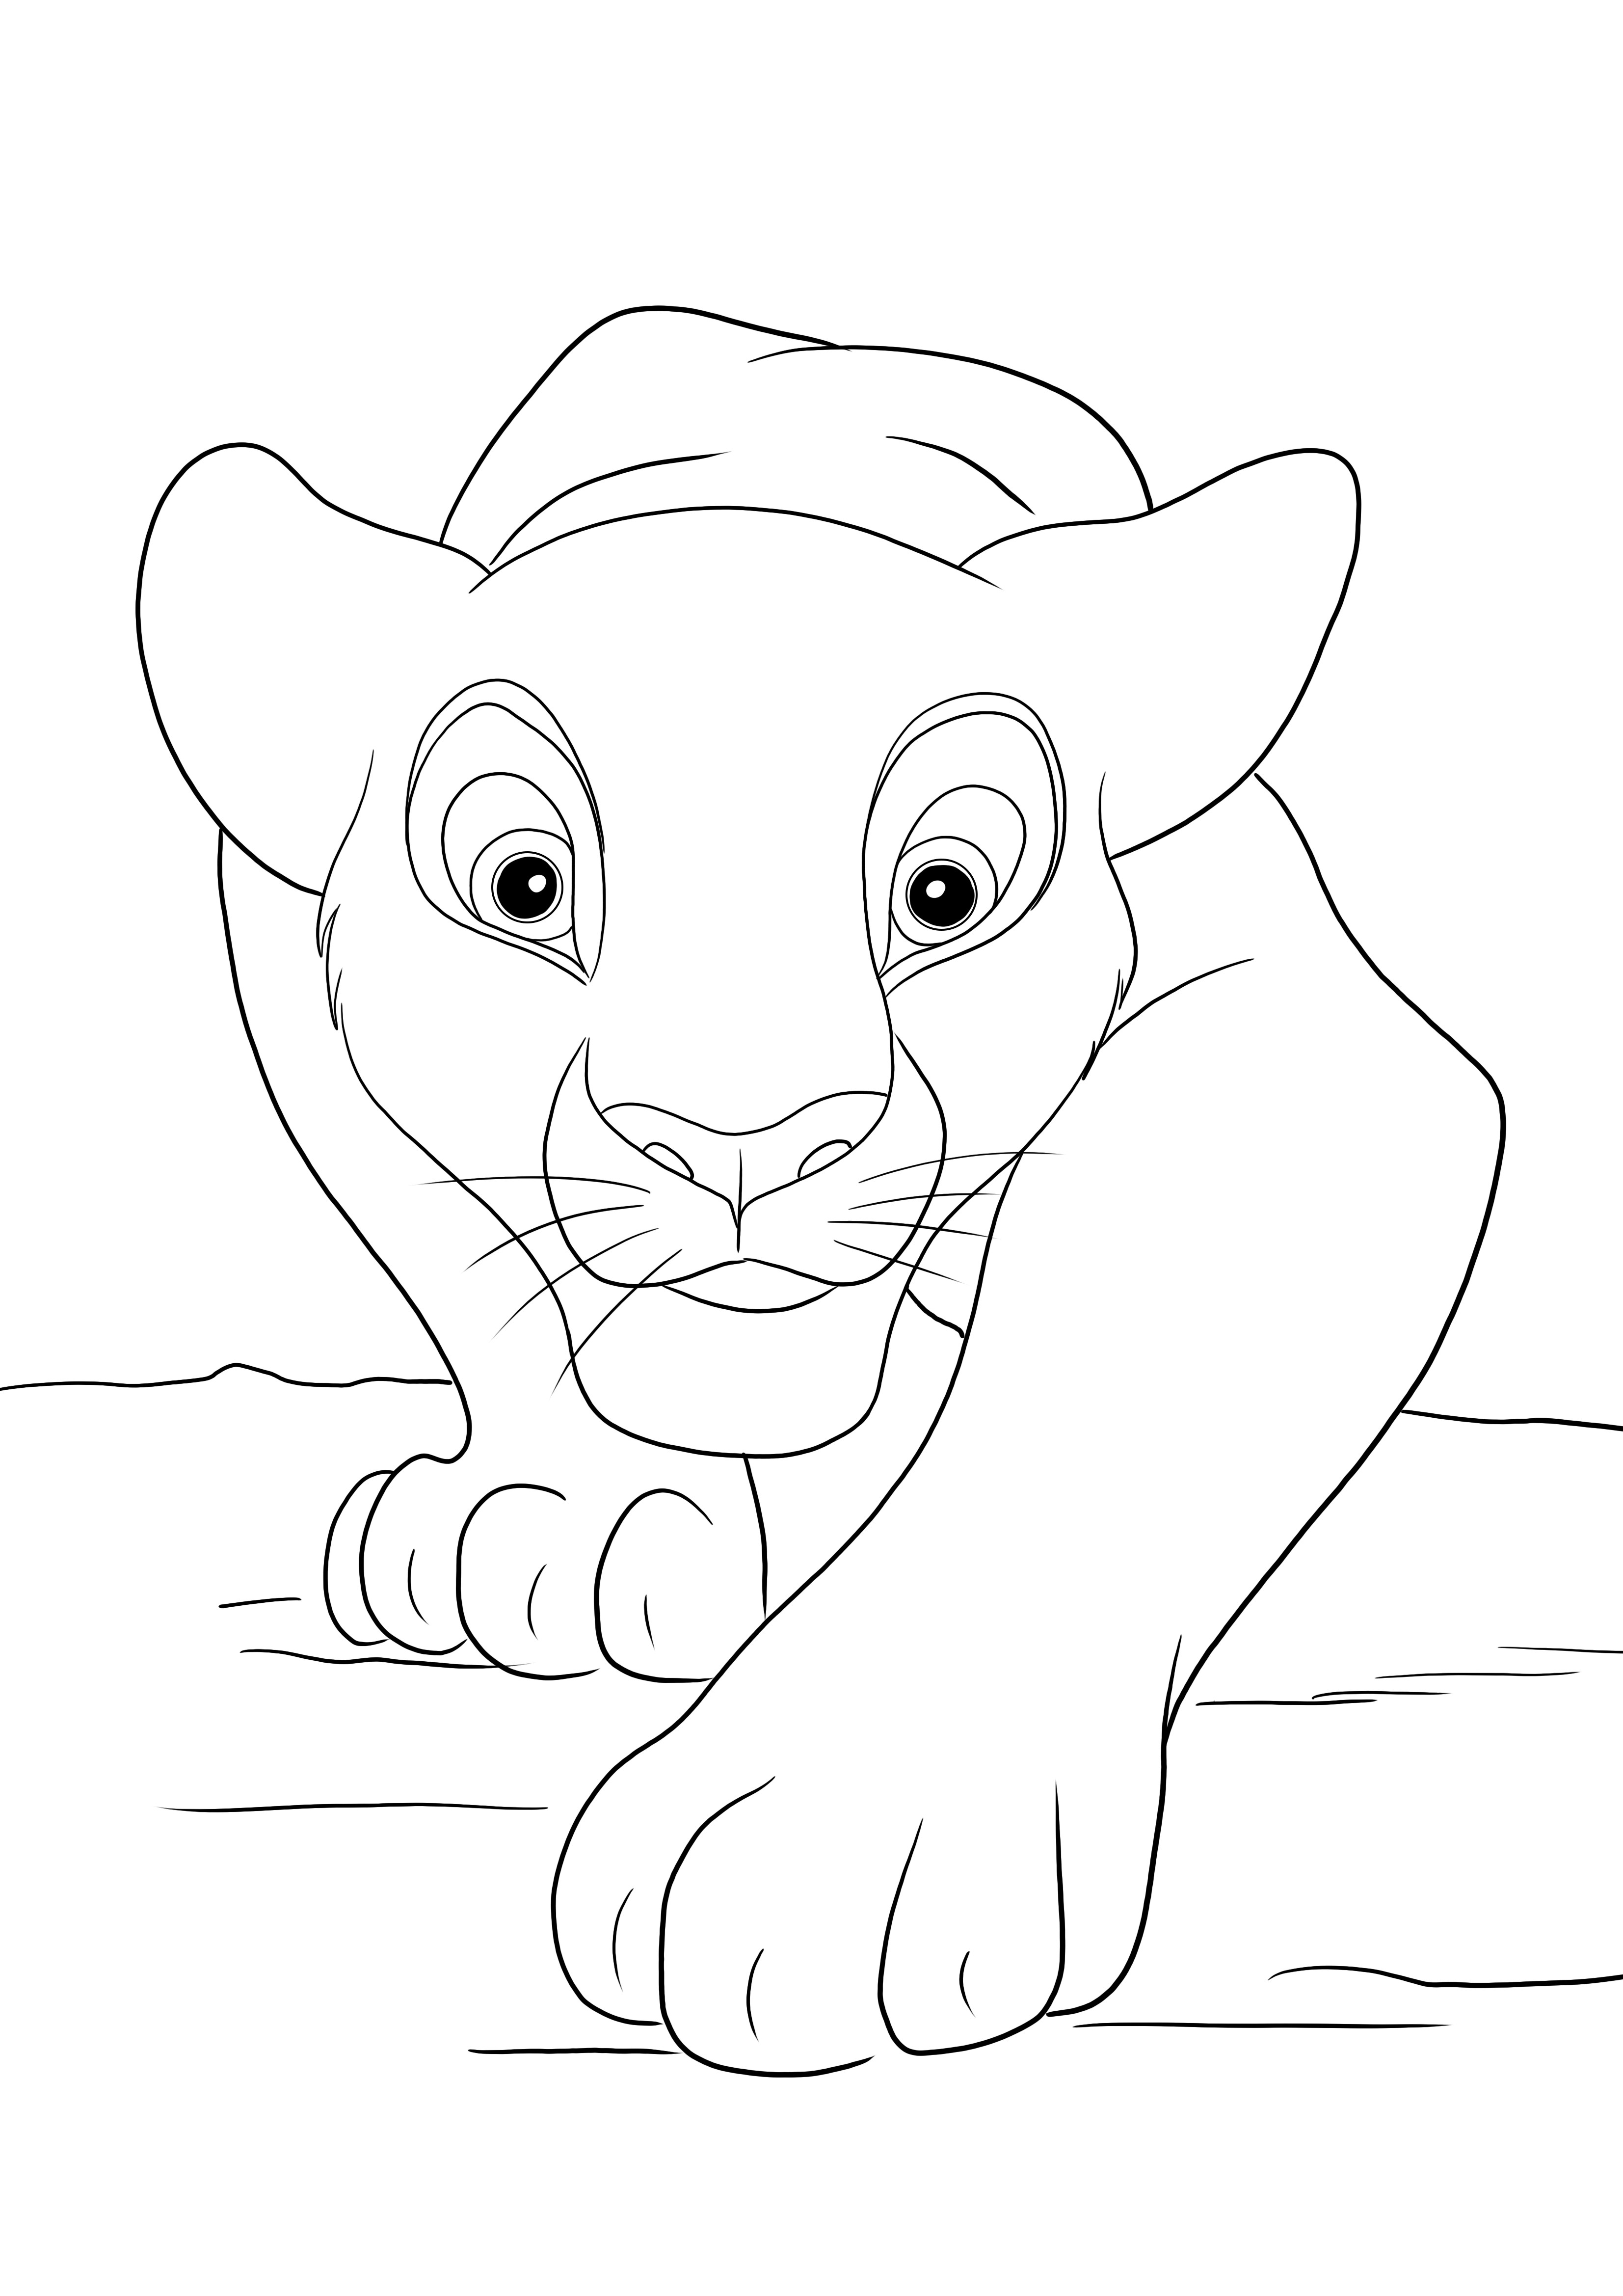 Simba metsästys värityssivu ilmaiseksi tulostettavaksi tai tallennettavaksi myöhempää kuvaa varten